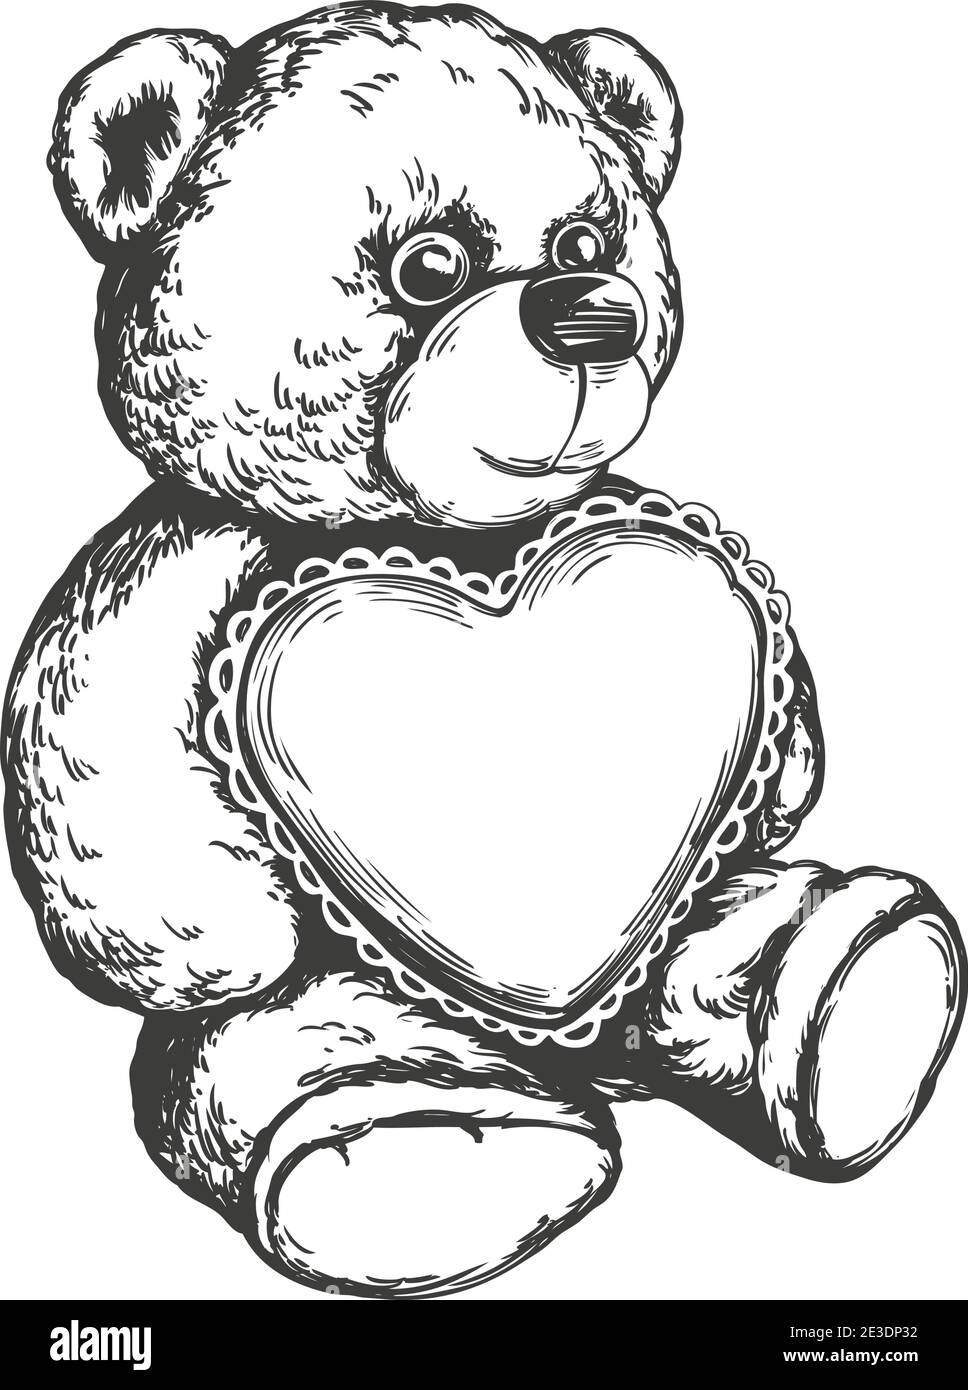 Realistic Teddy Bear Drawing